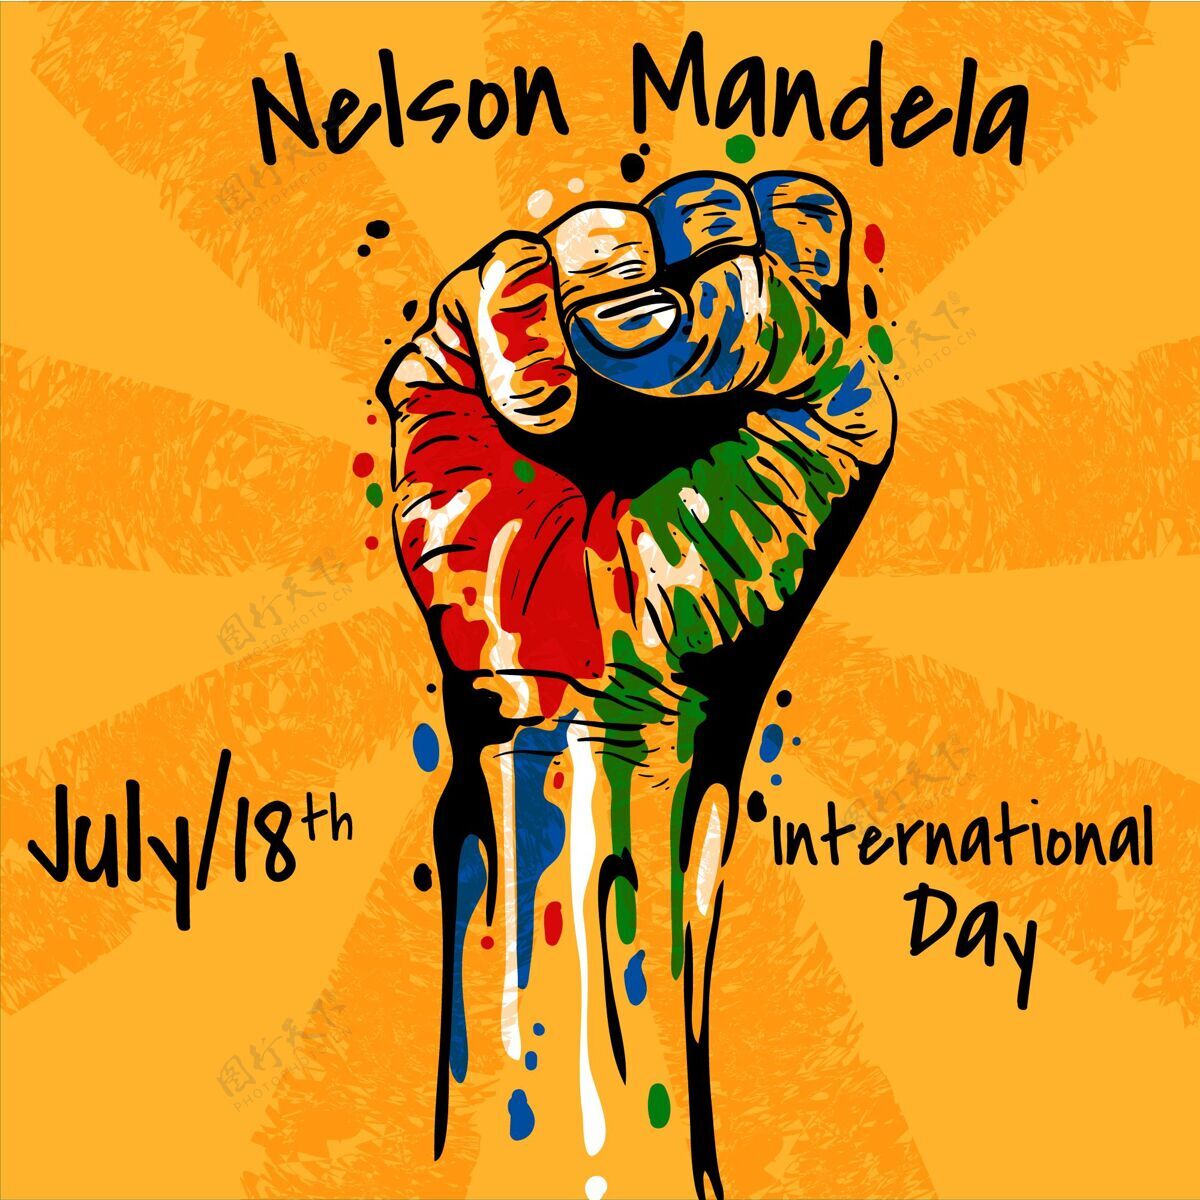 全球纳尔逊·曼德拉国际日插画曼德拉平面设计承认